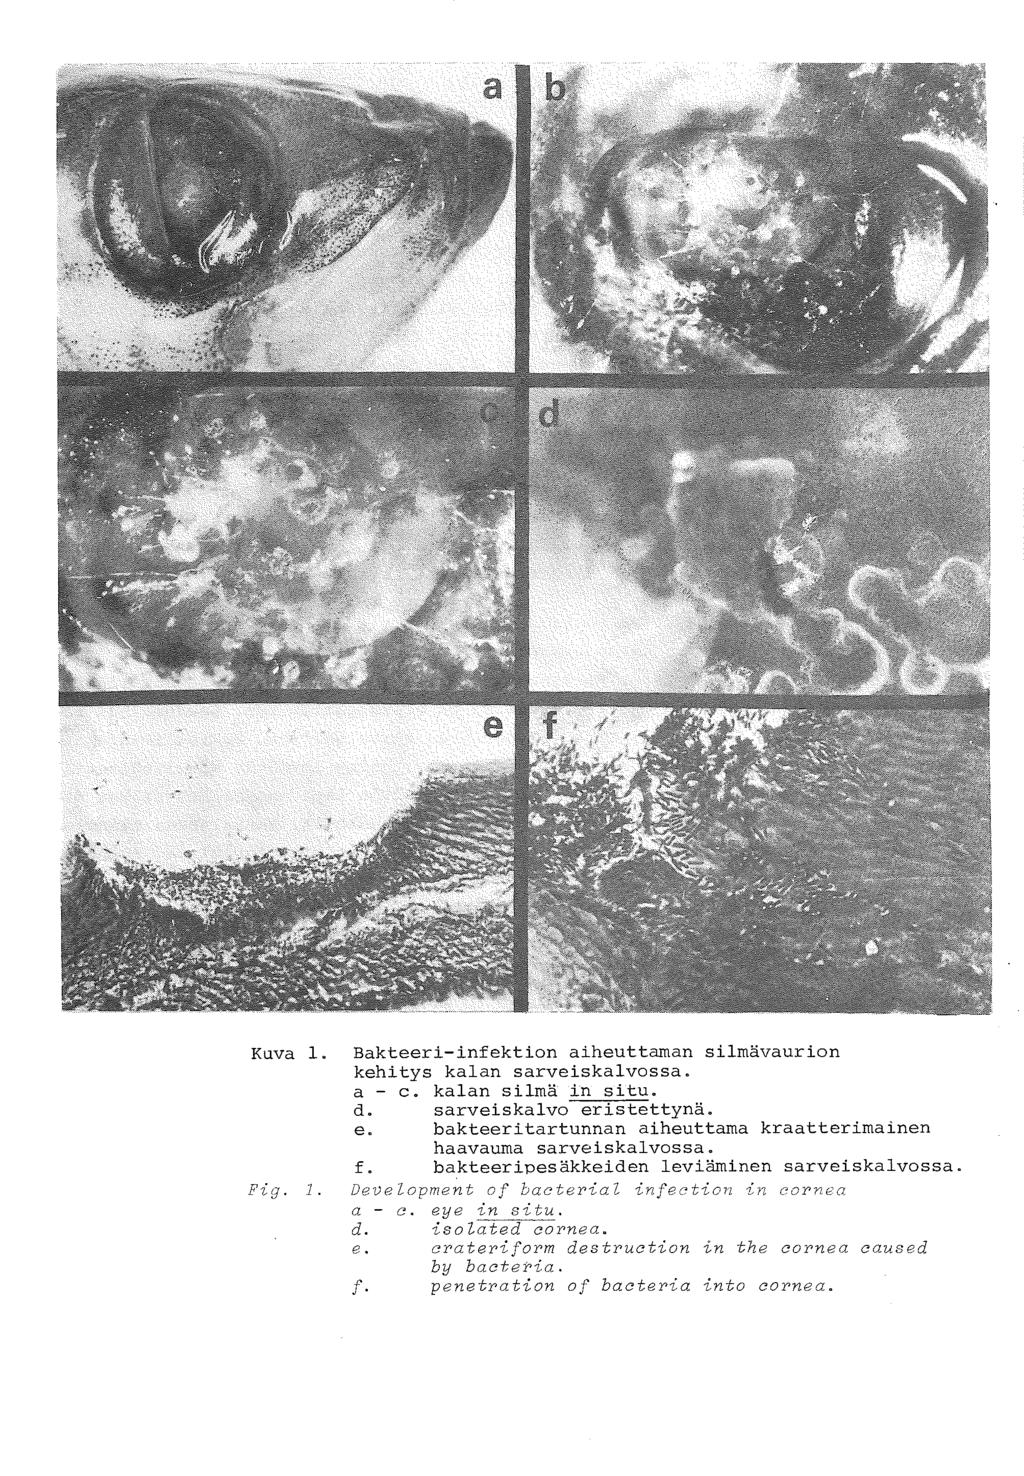 A. 1 Kuva l. Bakteeri-infektion aiheuttaman silmävaurion kehitys kalan sarveiskalvossa. a - c. kalan silmä in situ. d. sarveiskalvo er